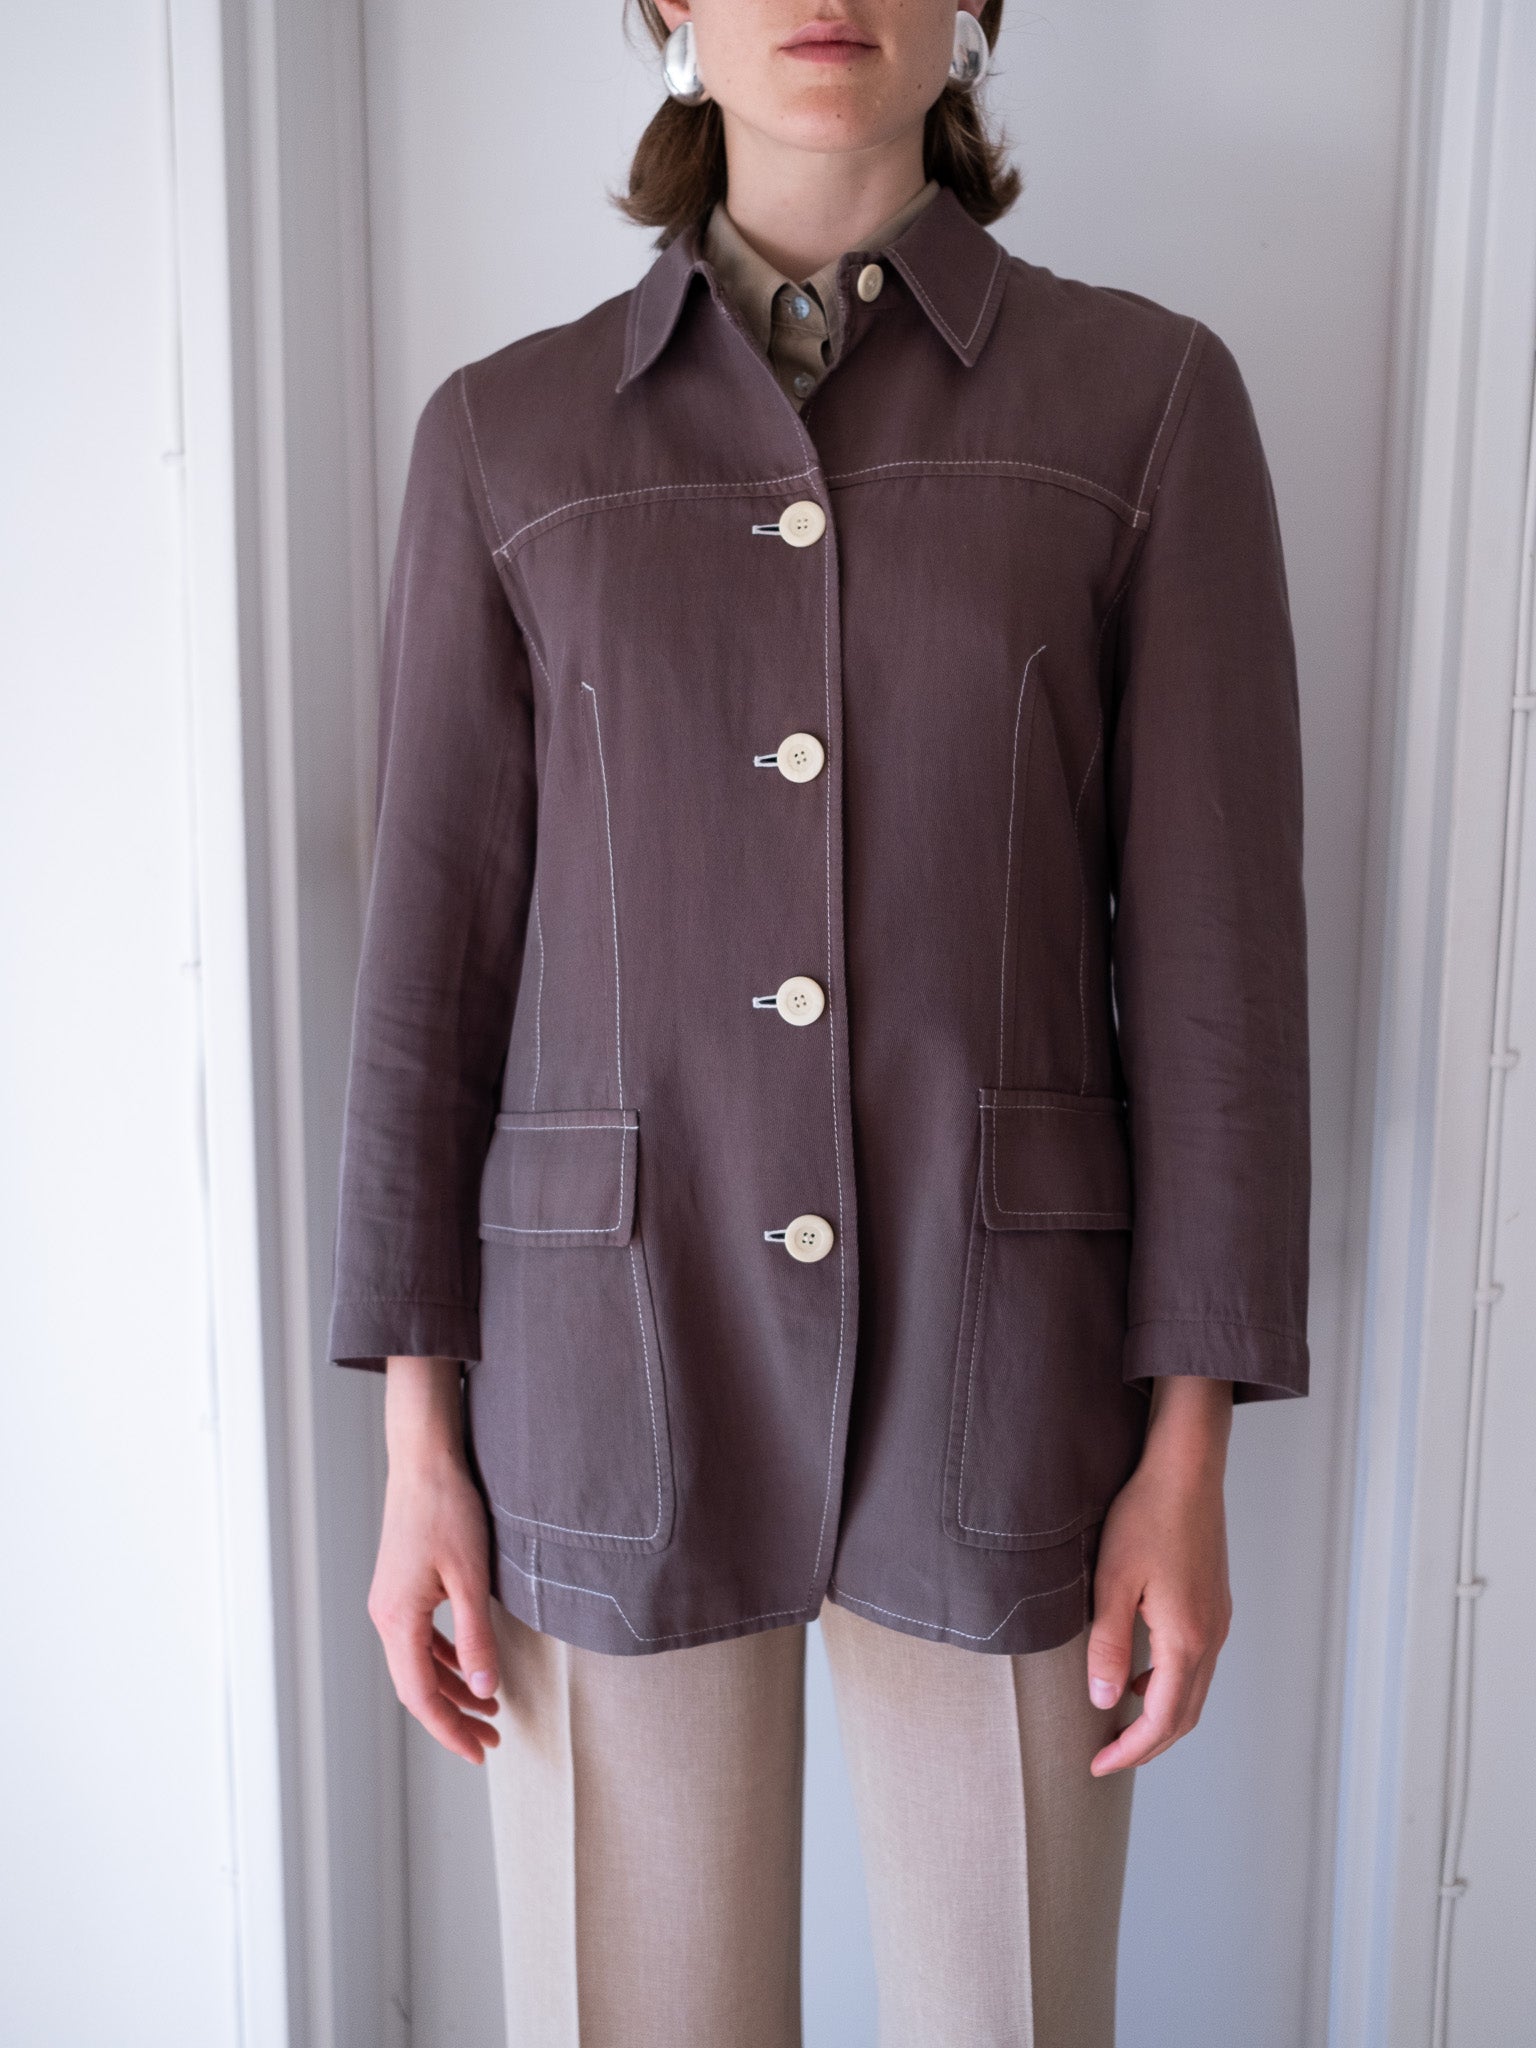 90's Dries Van Noten cotton/linen jacket